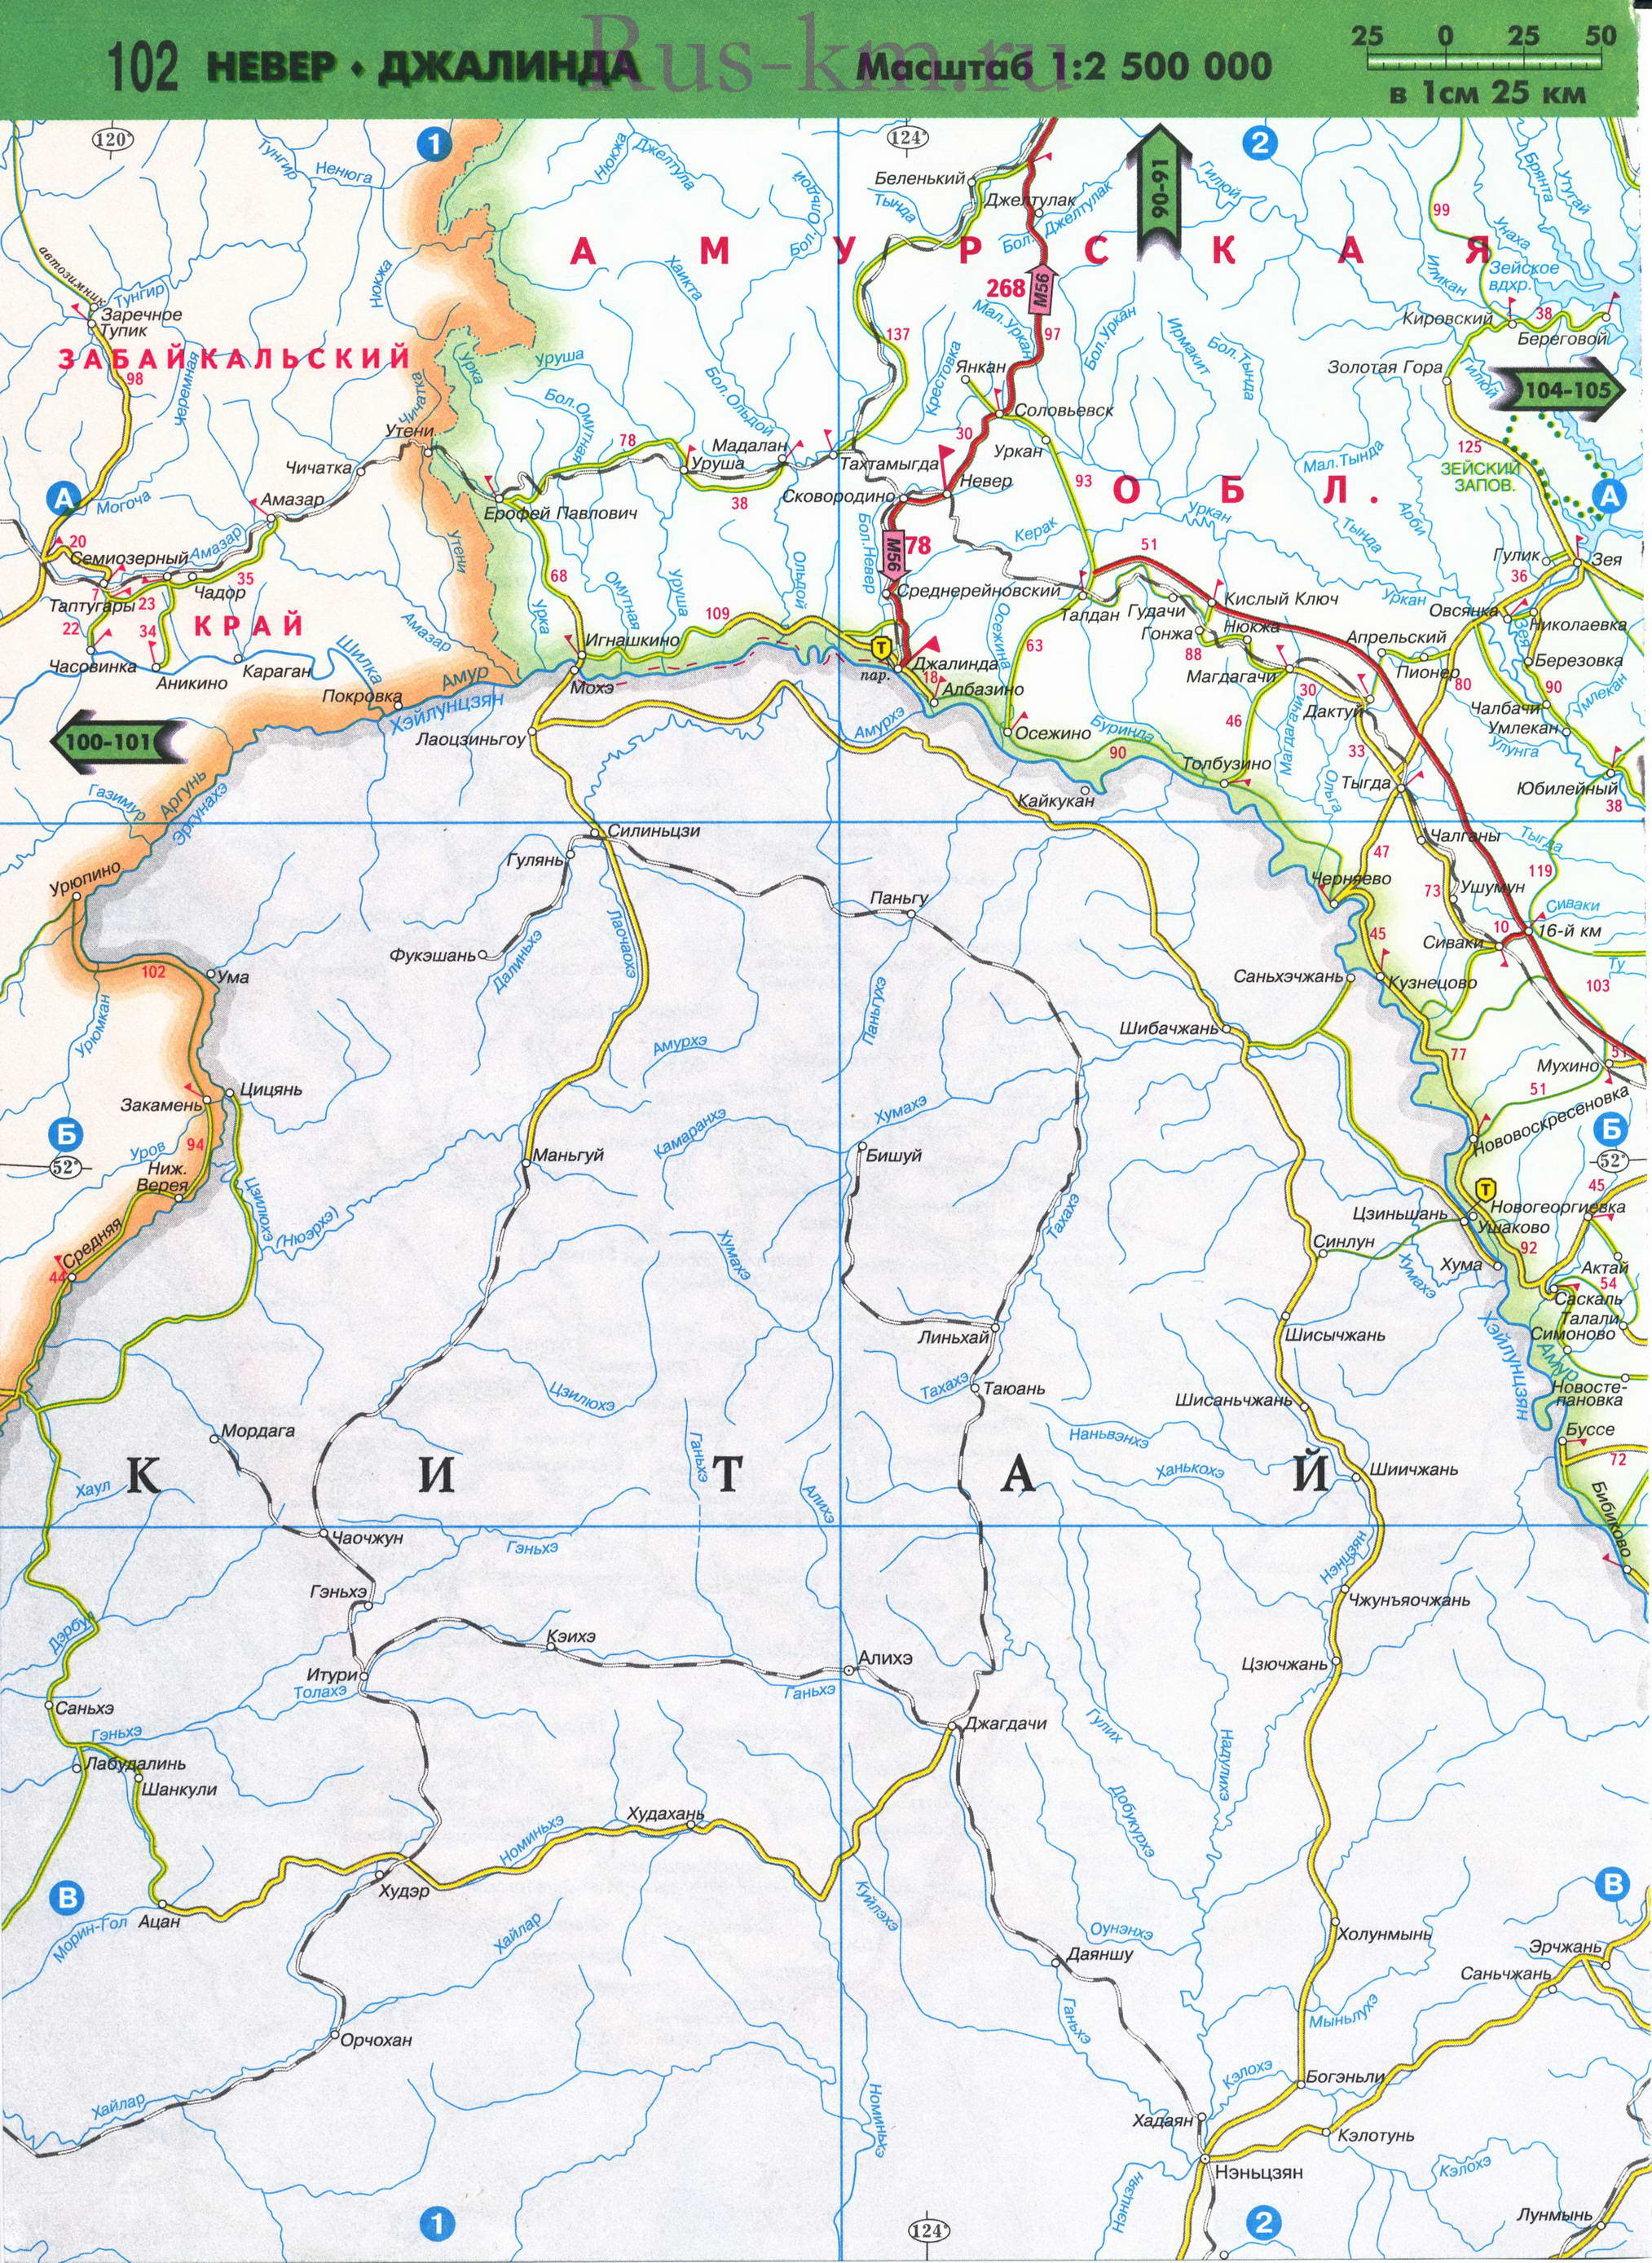 Карта Восточной Сибири автомобильная. Подробная карта автомобильных дорог Восточной Сибири из атласа России 2011 года, C2 - 